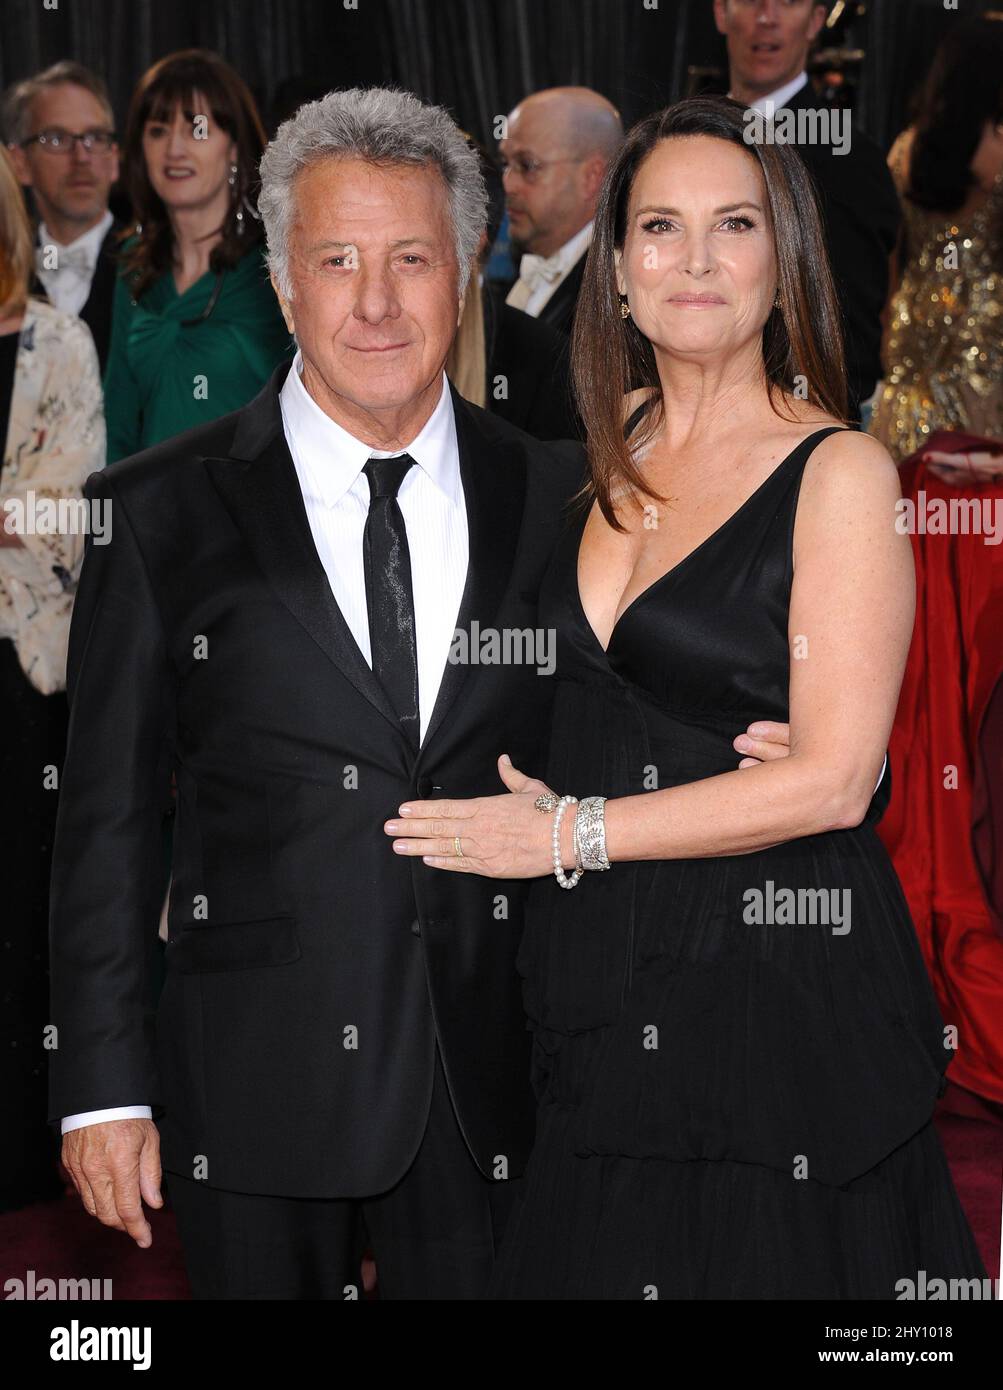 Dustin Hoffman e Lisa Gottsegen partecipano ai 85th Annual Academy Awards che si tengono al Dolby Theatre di Hollywood, CA. Foto Stock